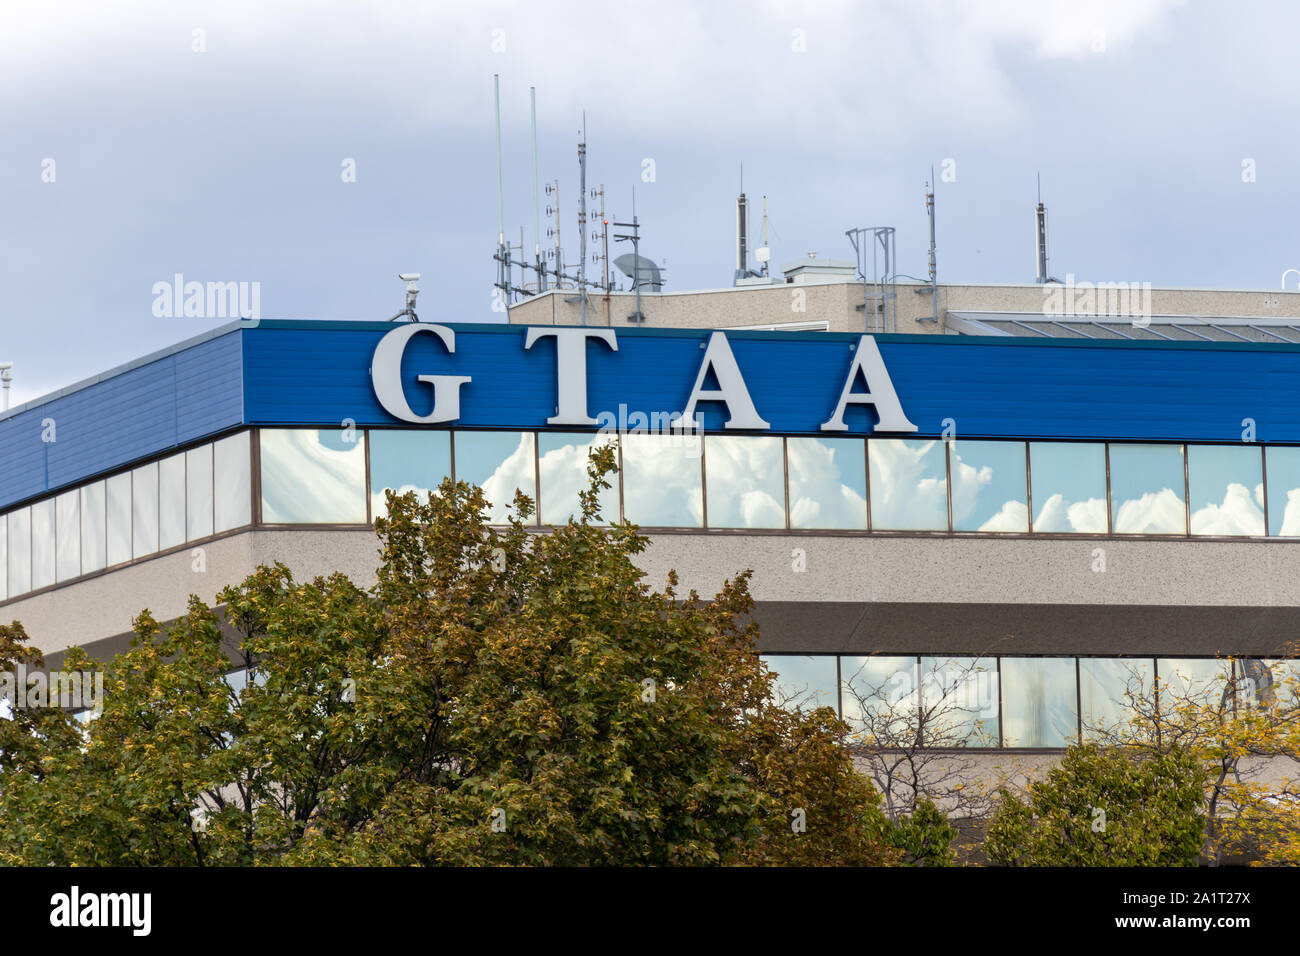 Edificio de oficinas de la GTAA (Greater Toronto Airports Authority) en el aeropuerto internacional Pearson de Toronto. Aeropuerto. Foto de stock